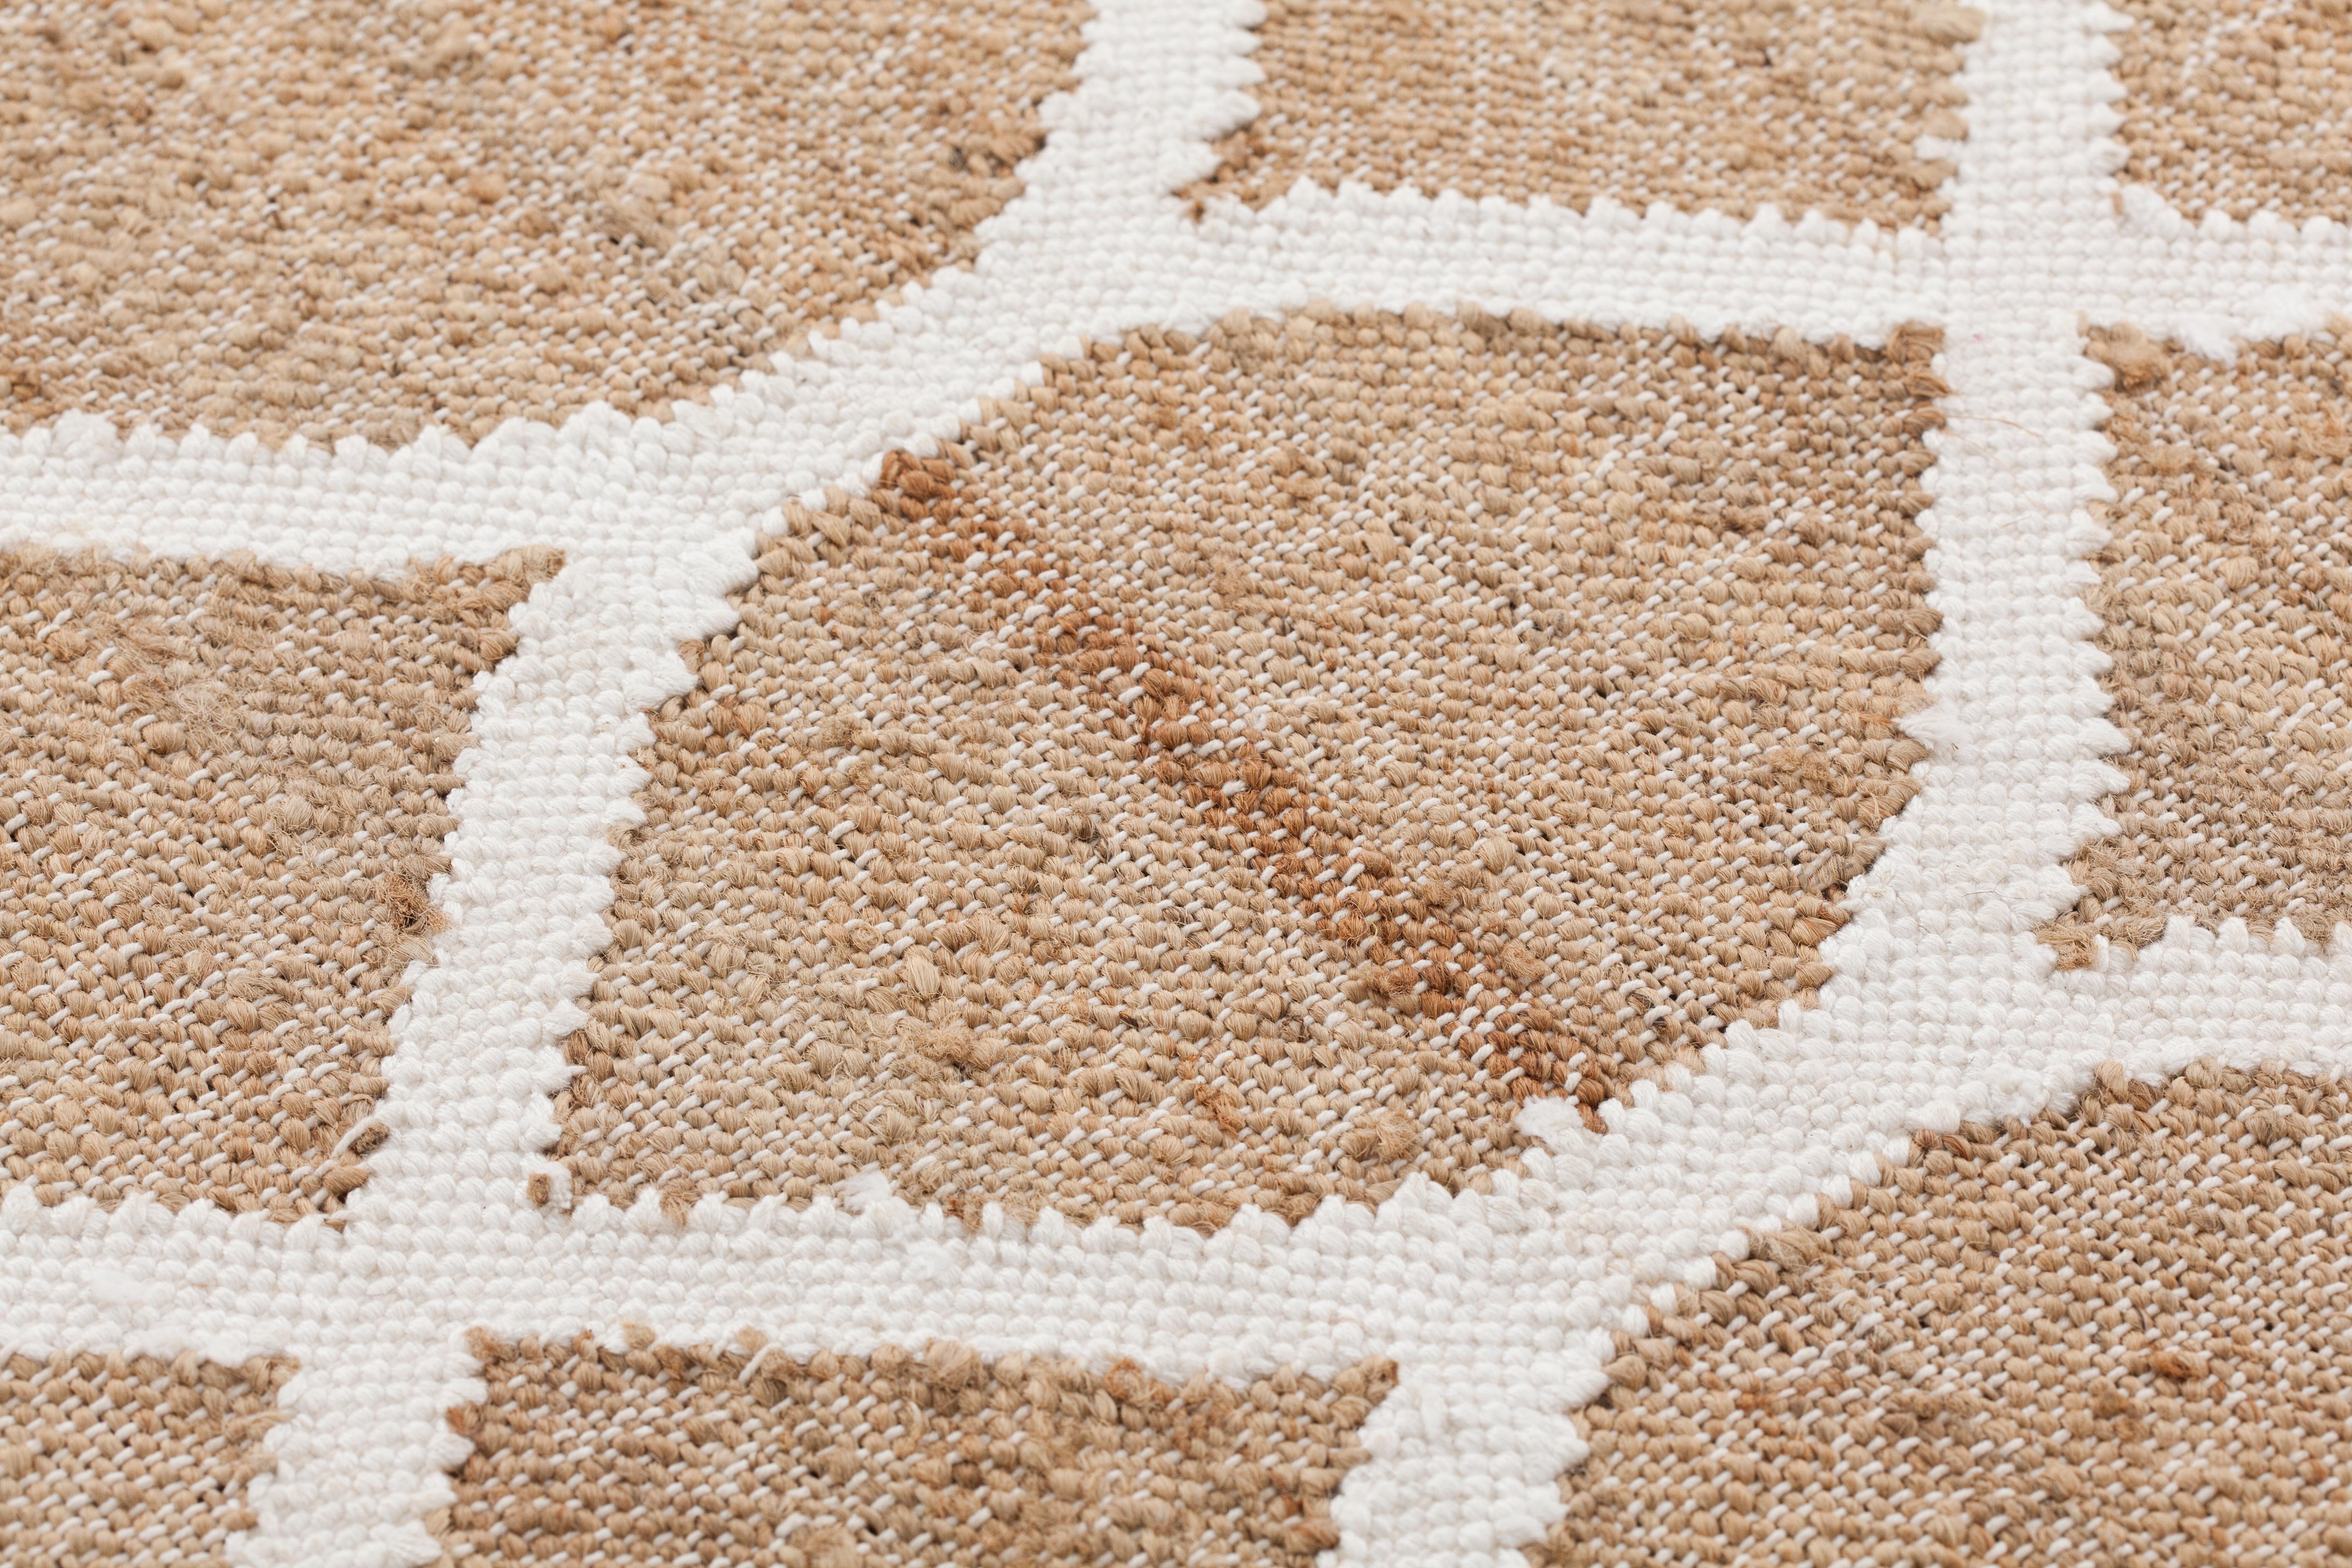 Der Teppich RODAS ist ein Hybrid aus Teppich und Wandteppich und gehört zur Kollektion KILIM, die von GAN, der Innenraummarke von GANDIABLASCO, unter Verwendung traditioneller Webtechniken entworfen und hergestellt wird.
RODAS zeichnet sich durch